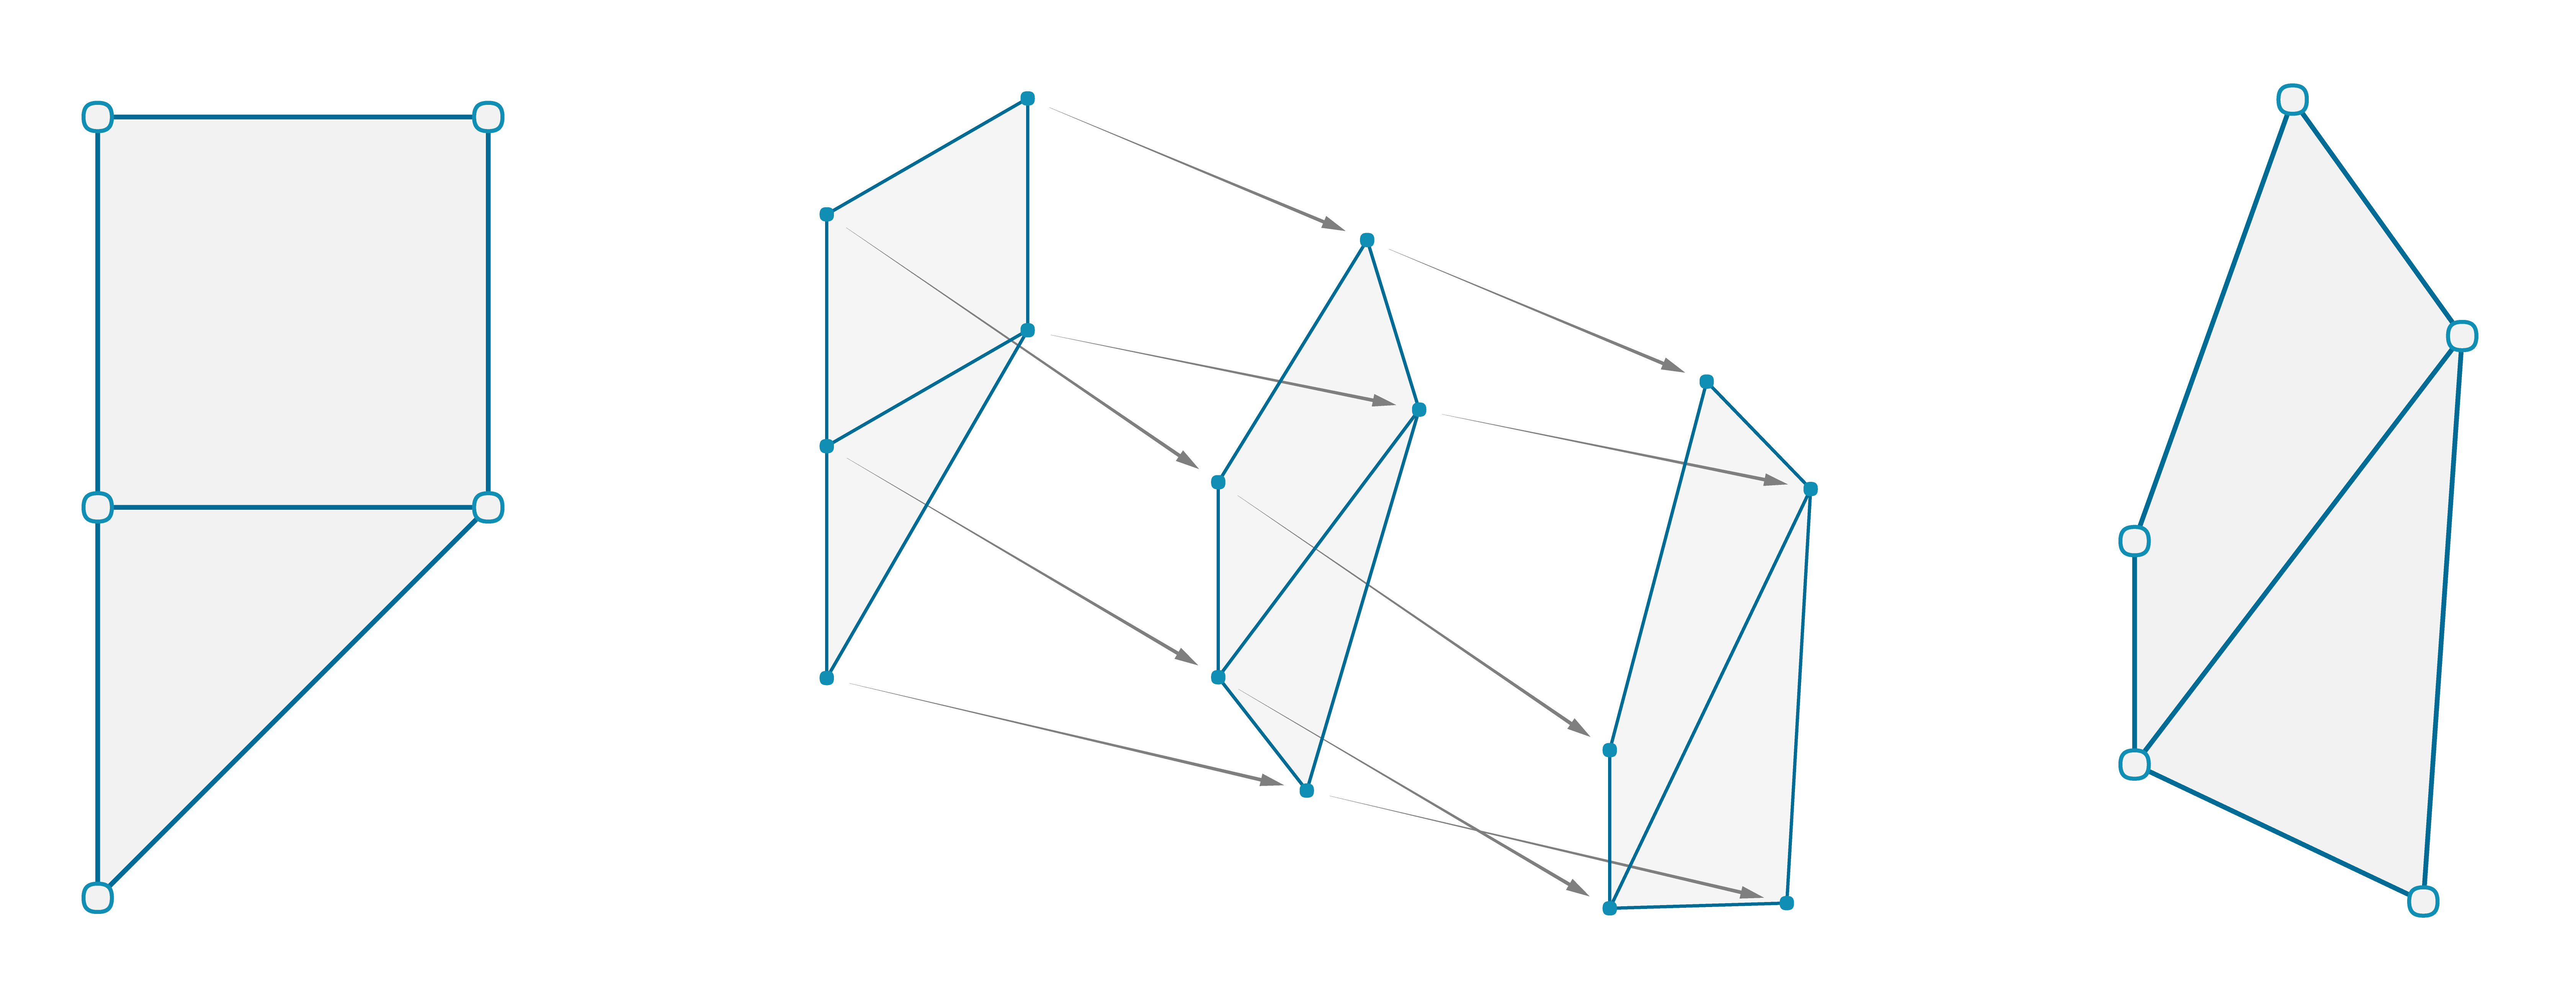 IMAGE - simple mesh diagram